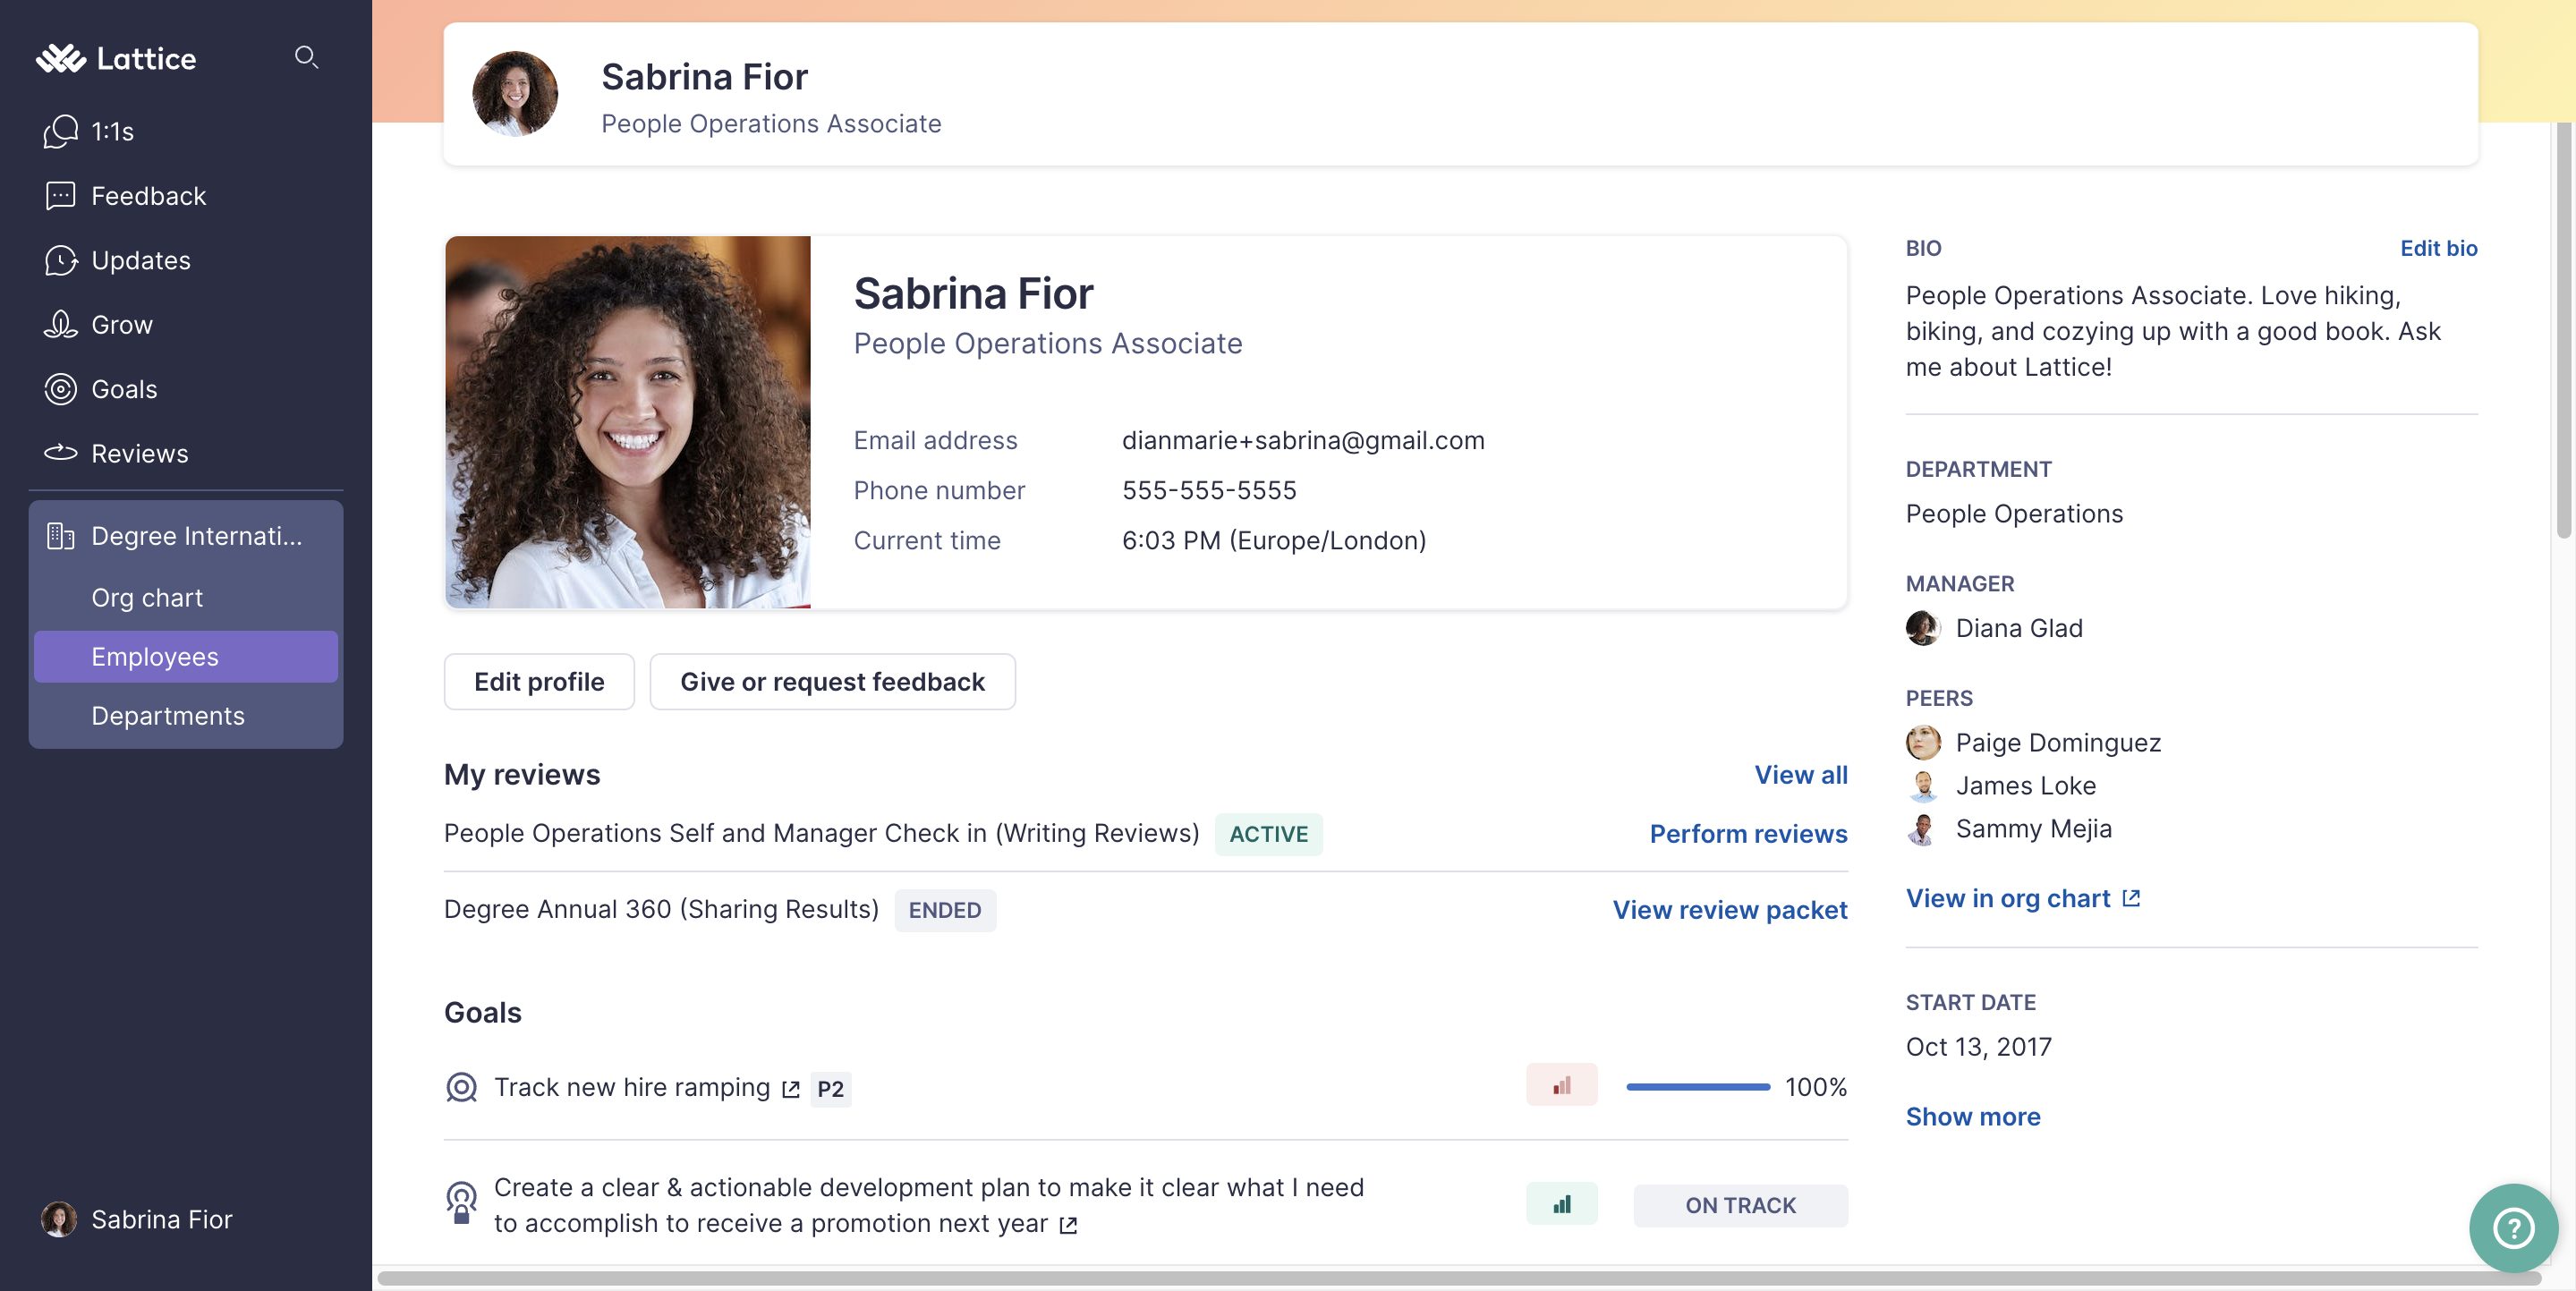 Page de profil d'employé pour Sabrina Fior. Une carte de profil comprenant une photo de profil, un nom, un rôle, un e-mail, un numéro de téléphone et un fuseau horaire est visible en haut de la page.